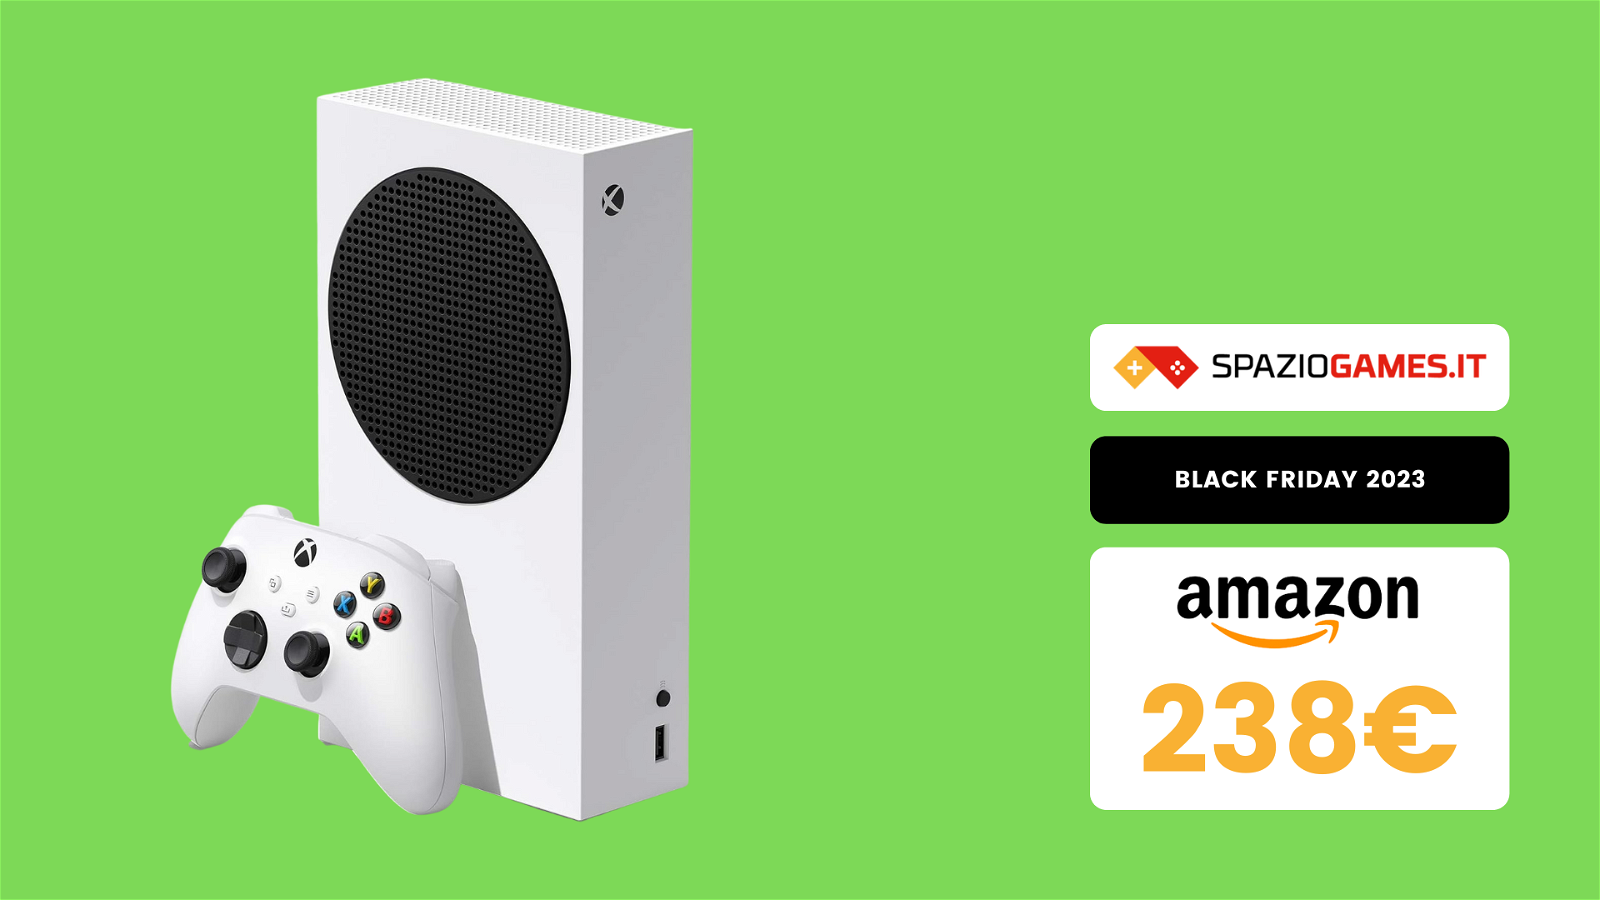 Xbox Series S a un prezzo STRACCIATO al Black Friday: solo 238€!